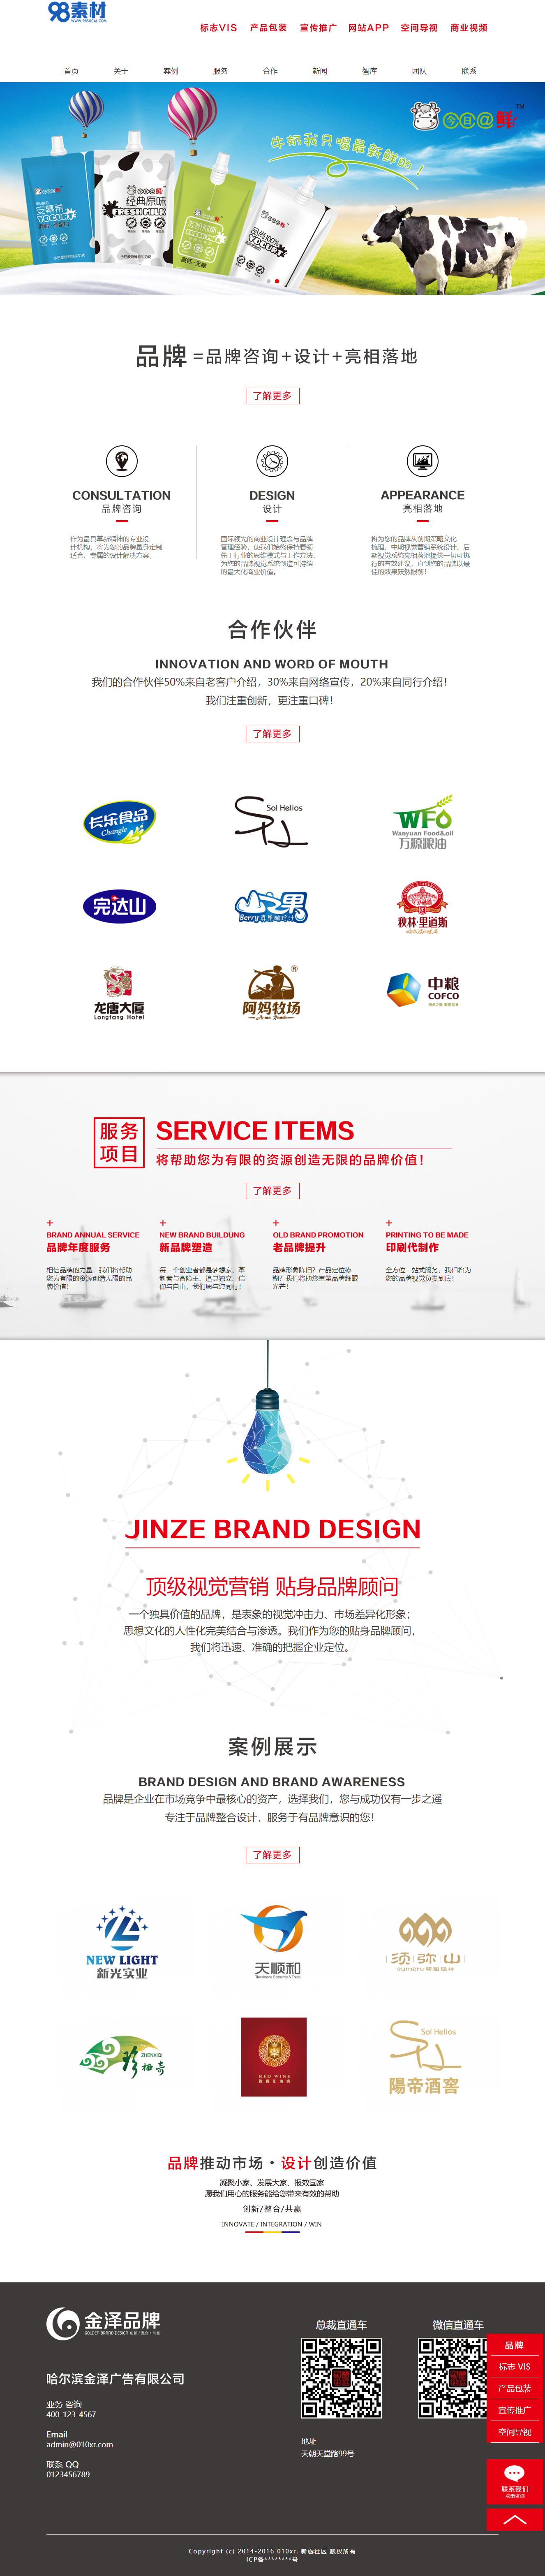 织梦模板产品品牌广告设计企业网站dedecms模板(图1)